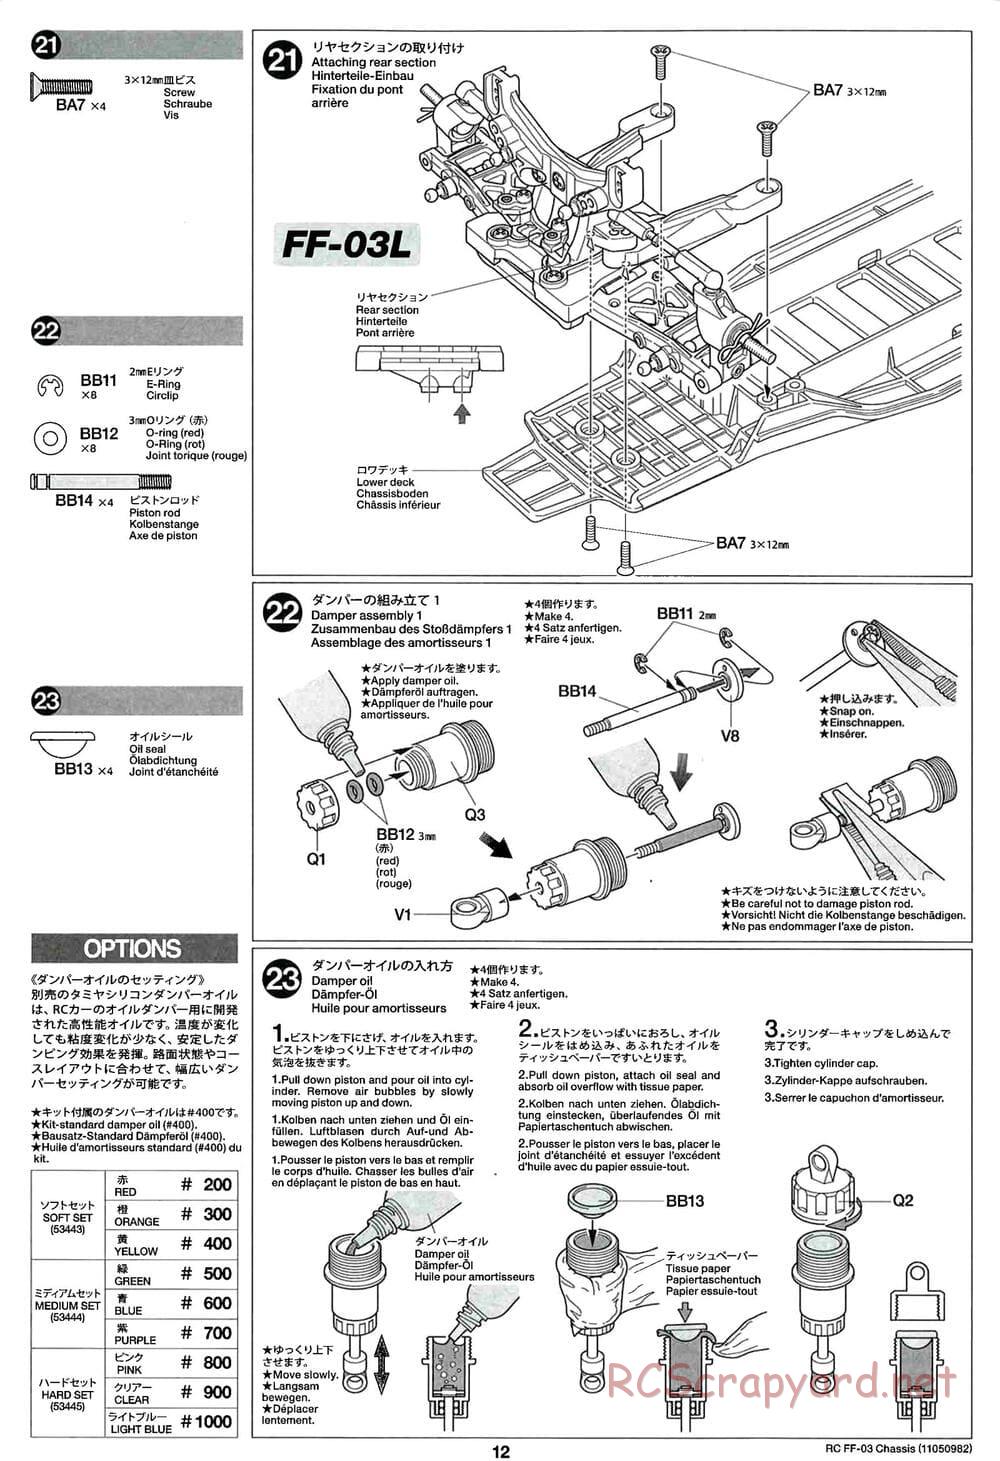 Tamiya - Honda Accord Aero Custom - FF-03 Chassis - Manual - Page 12